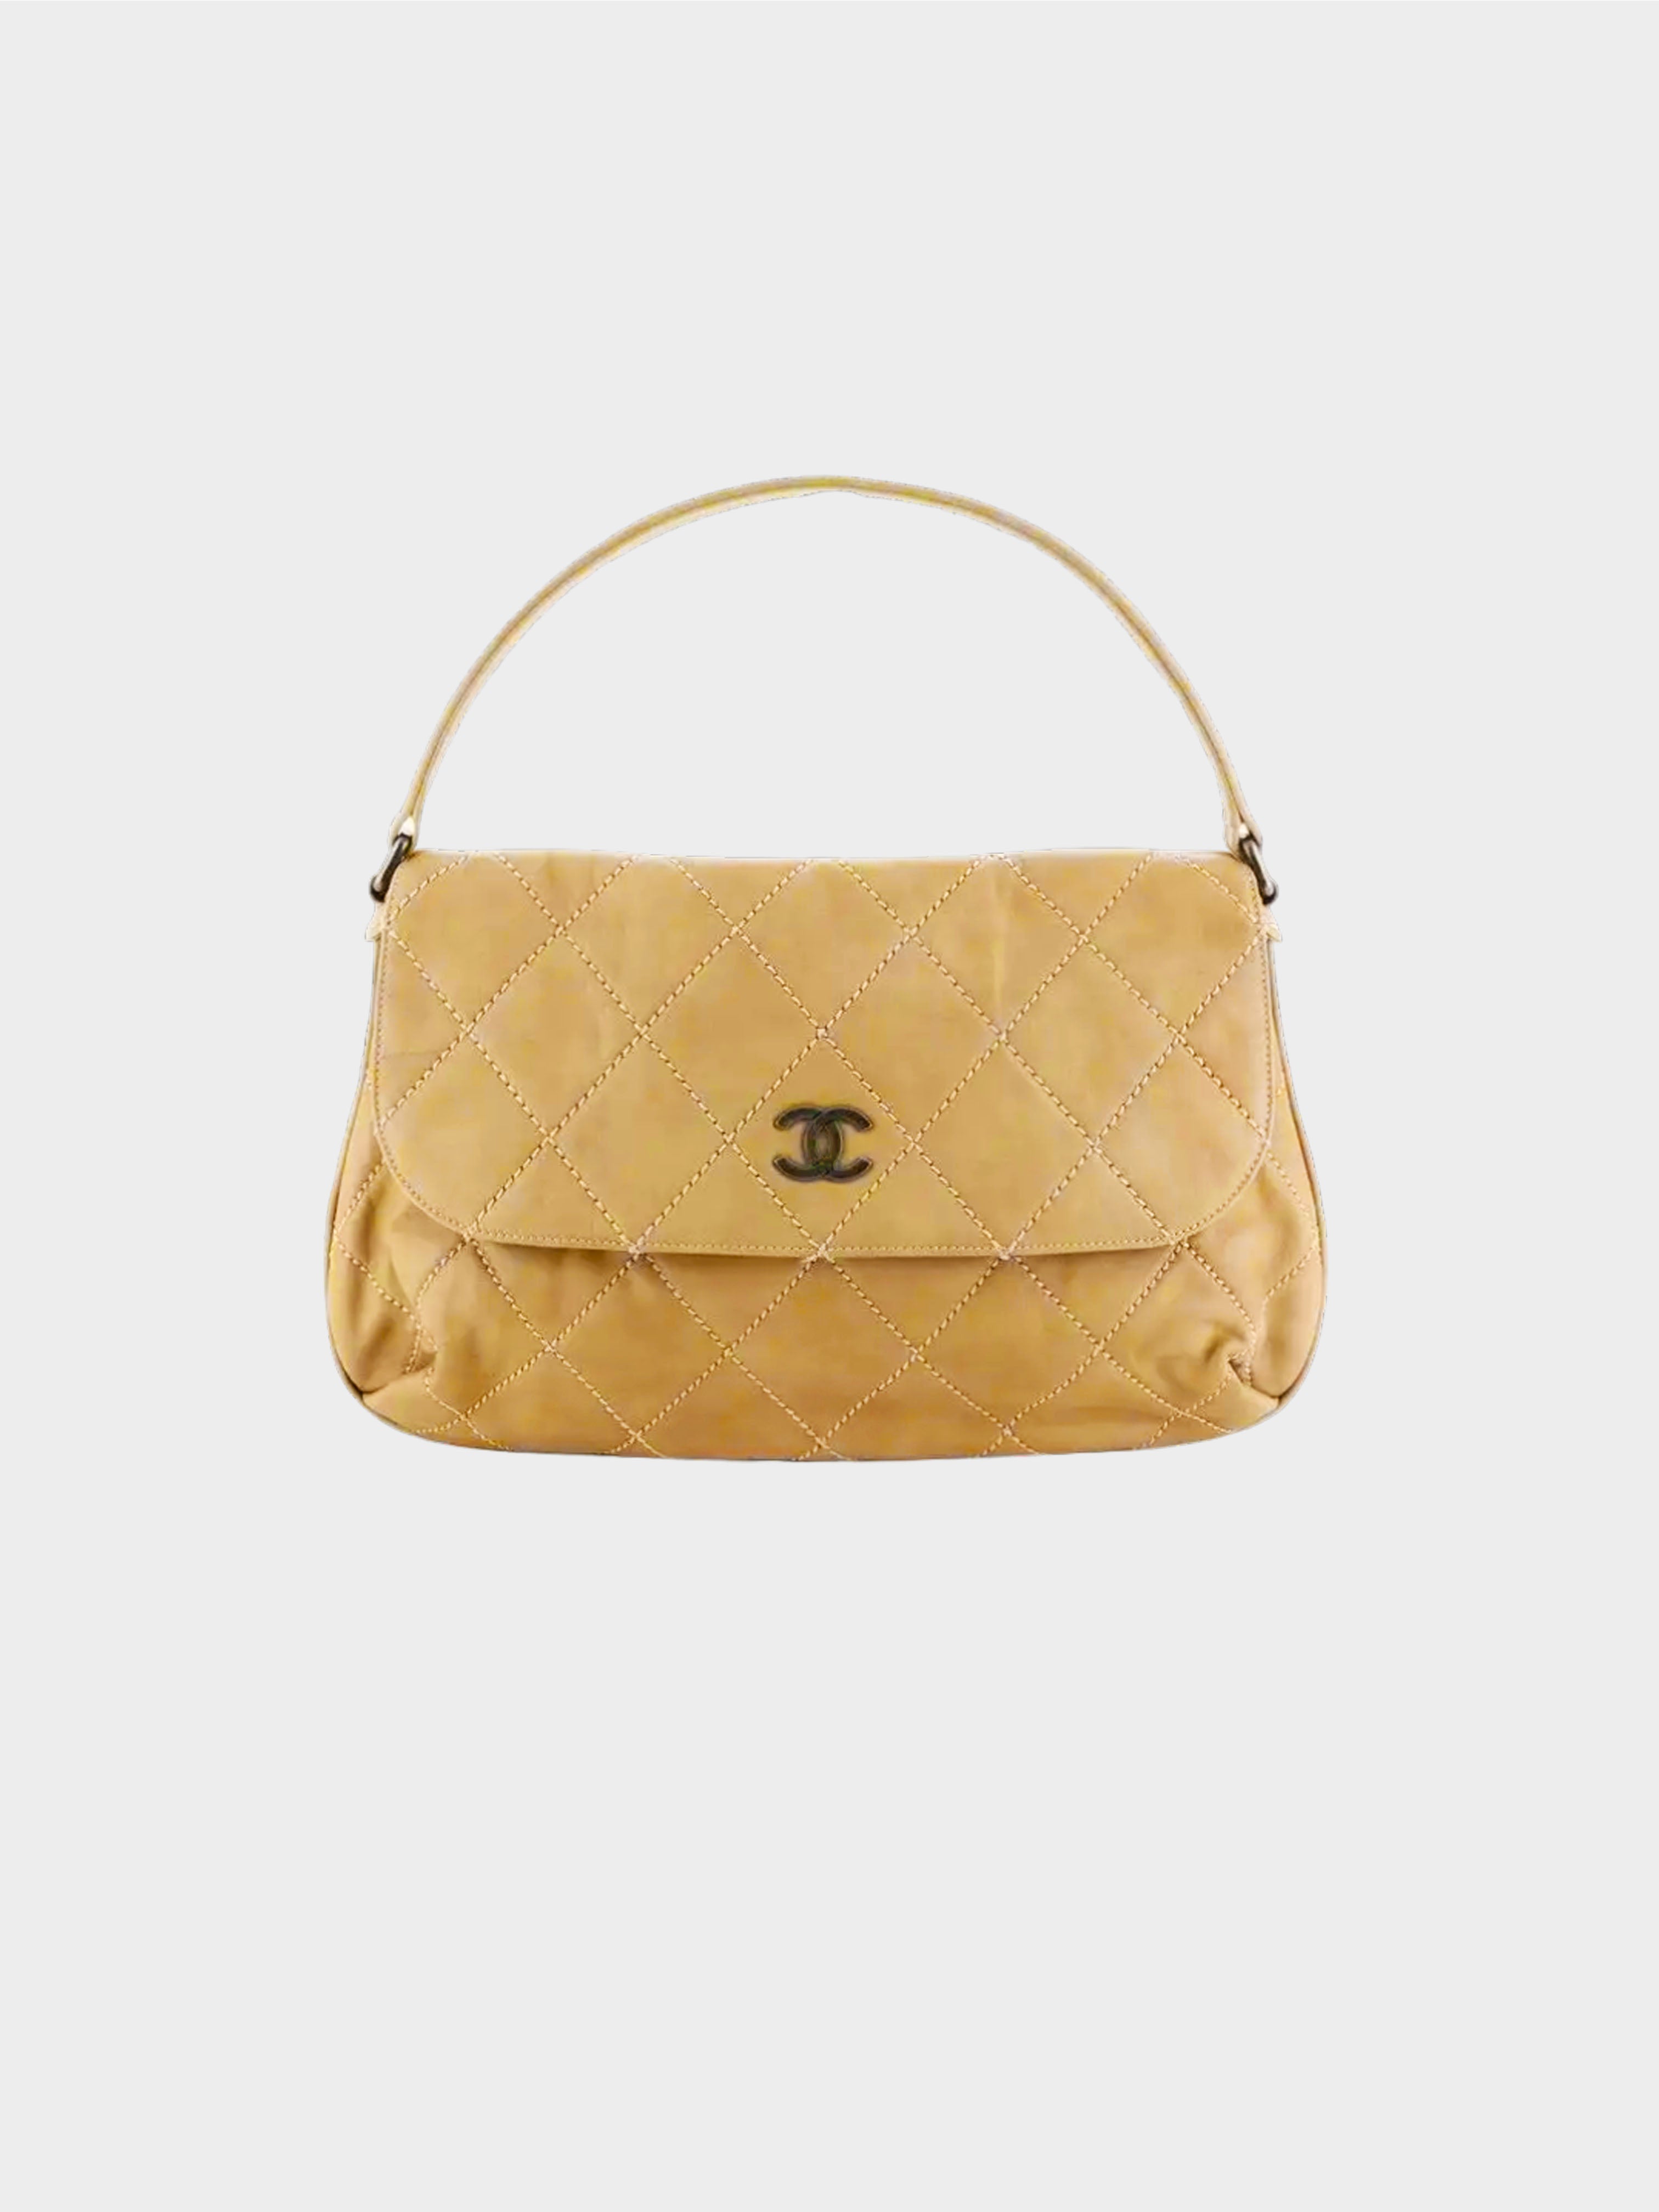 Chanel 2007 Beige Wild Stitch Large Shoulder Flap Bag